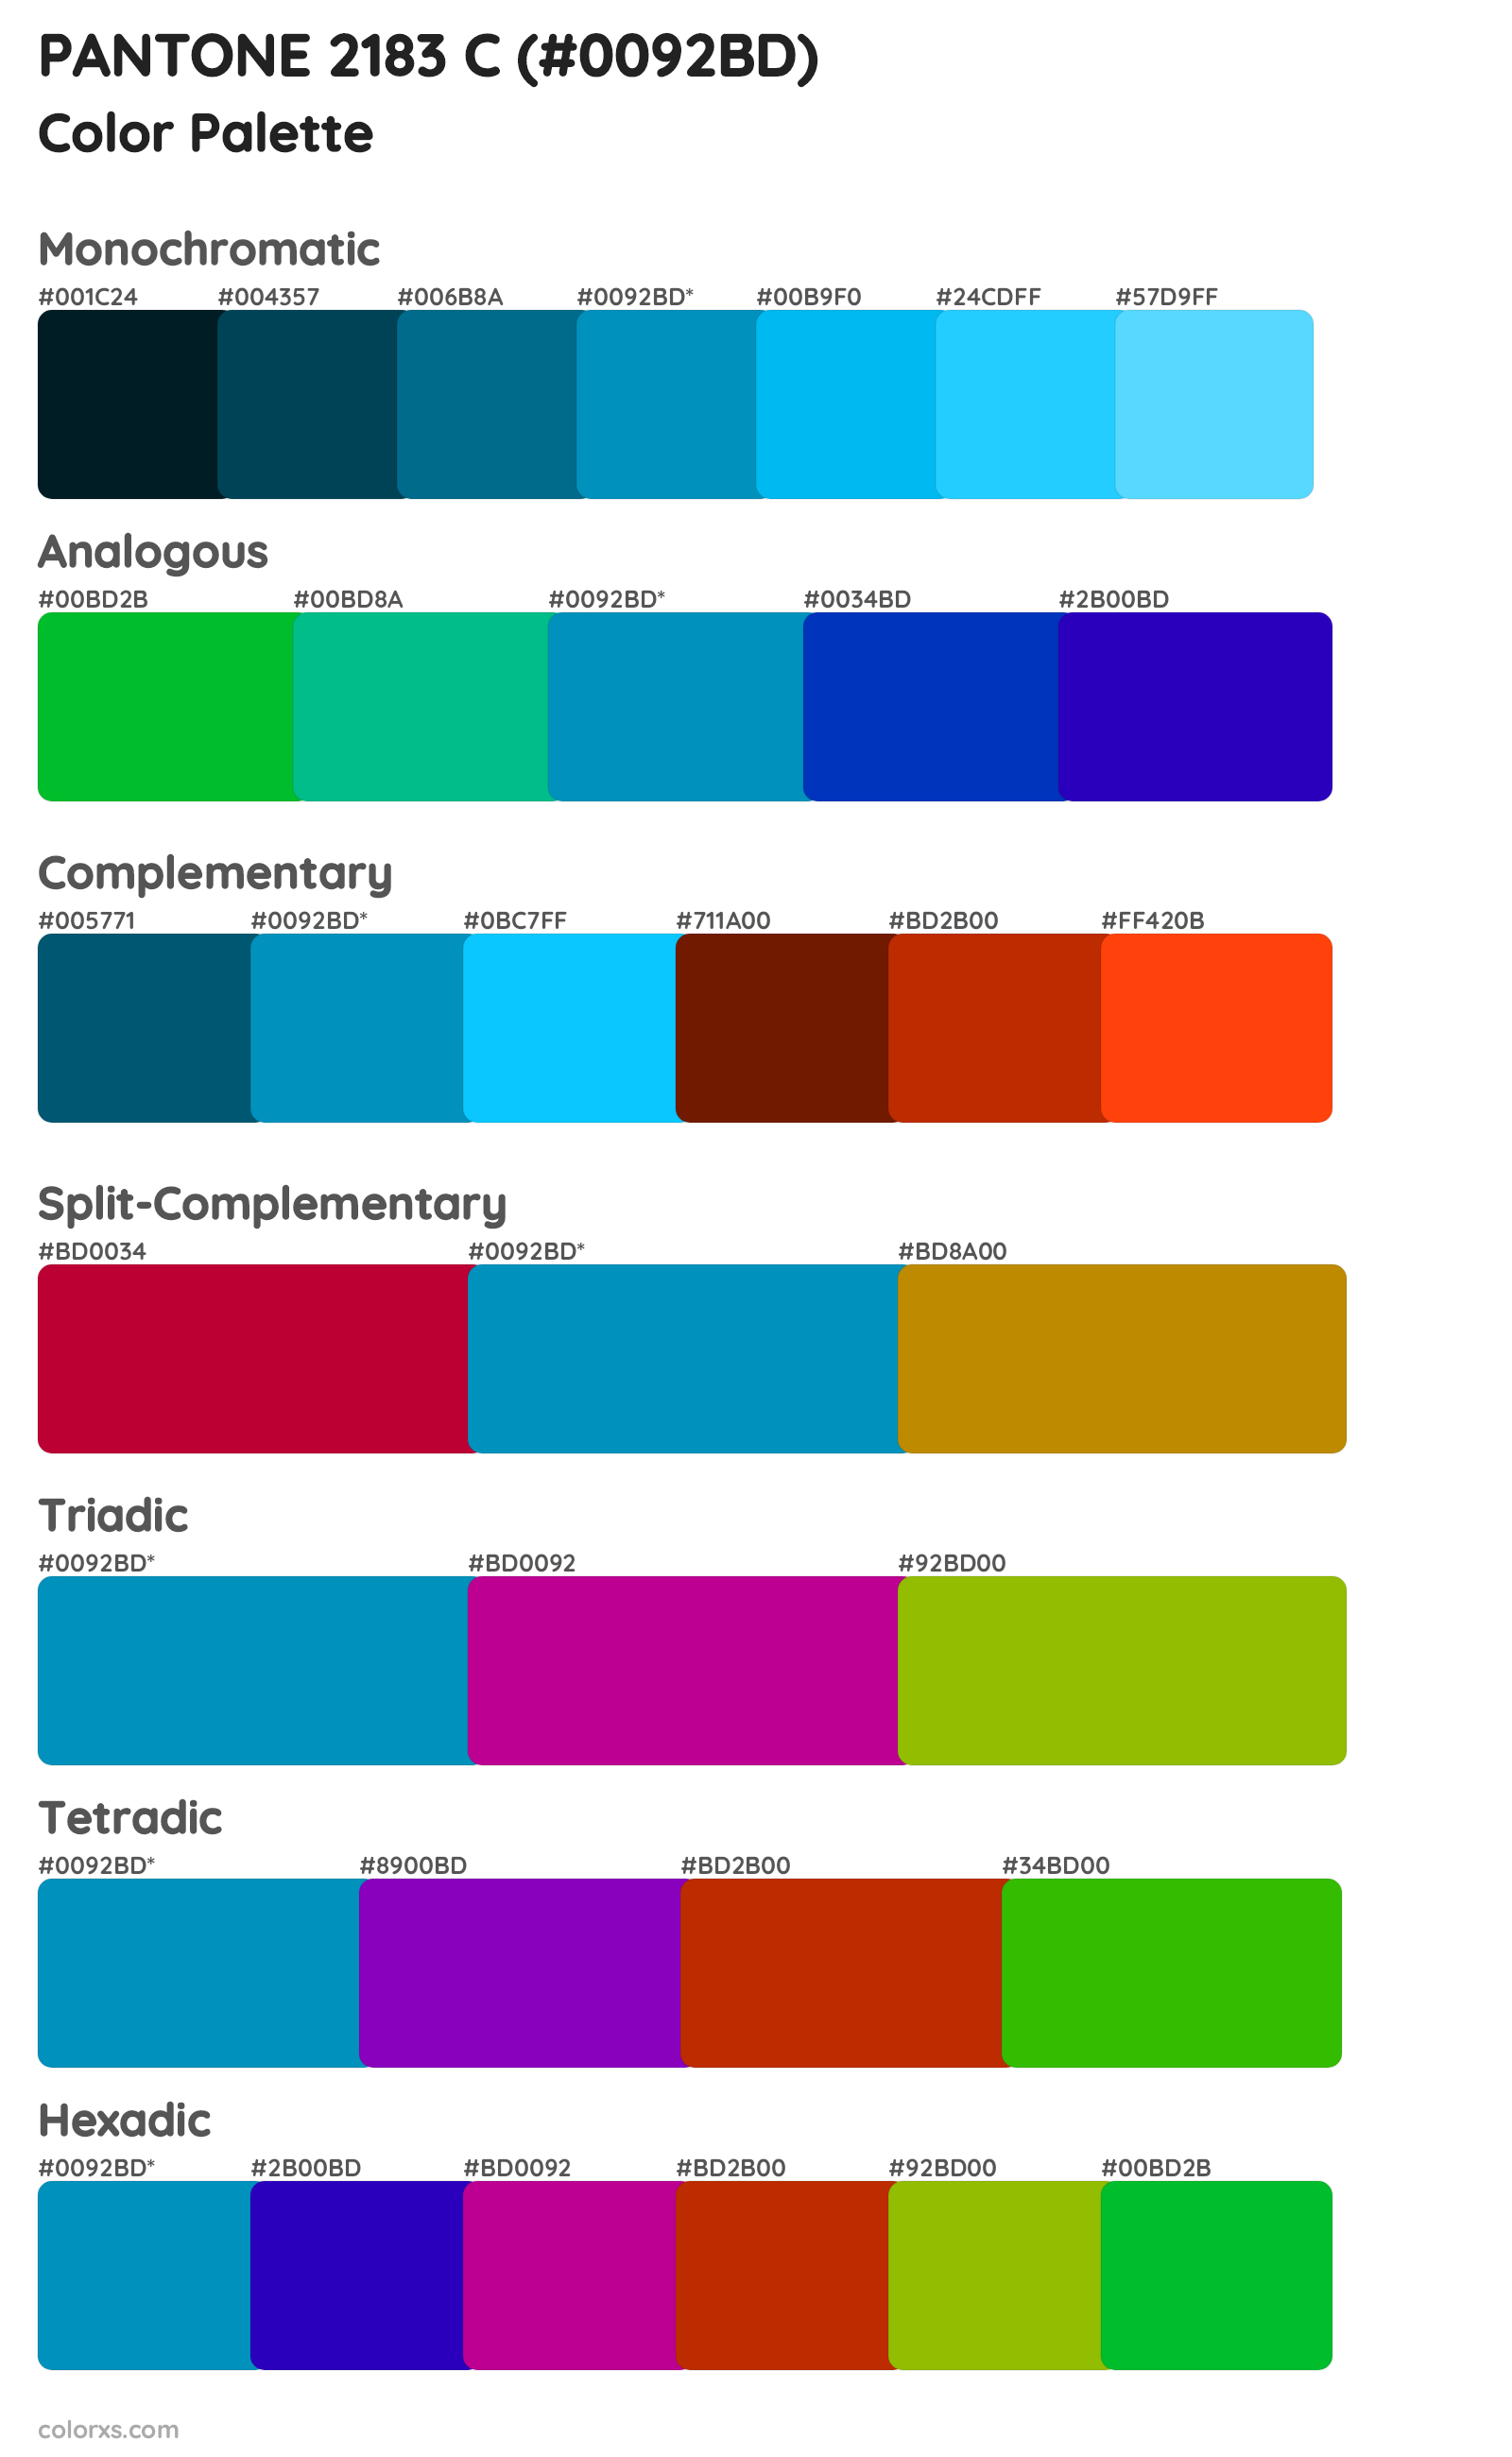 PANTONE 2183 C Color Scheme Palettes